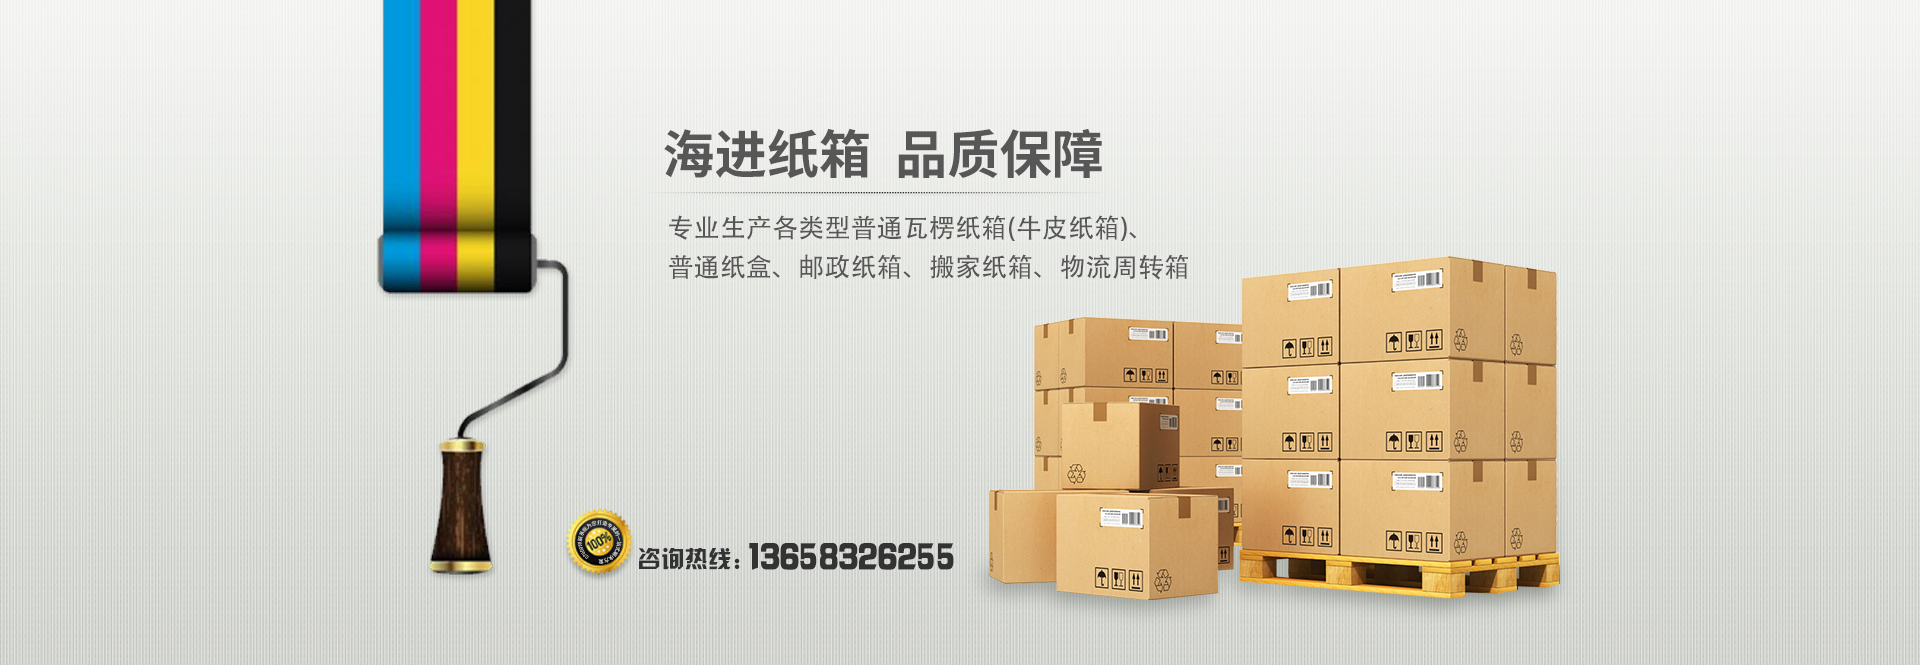 重庆纸箱厂家加入富海360合作seo百度推广软件